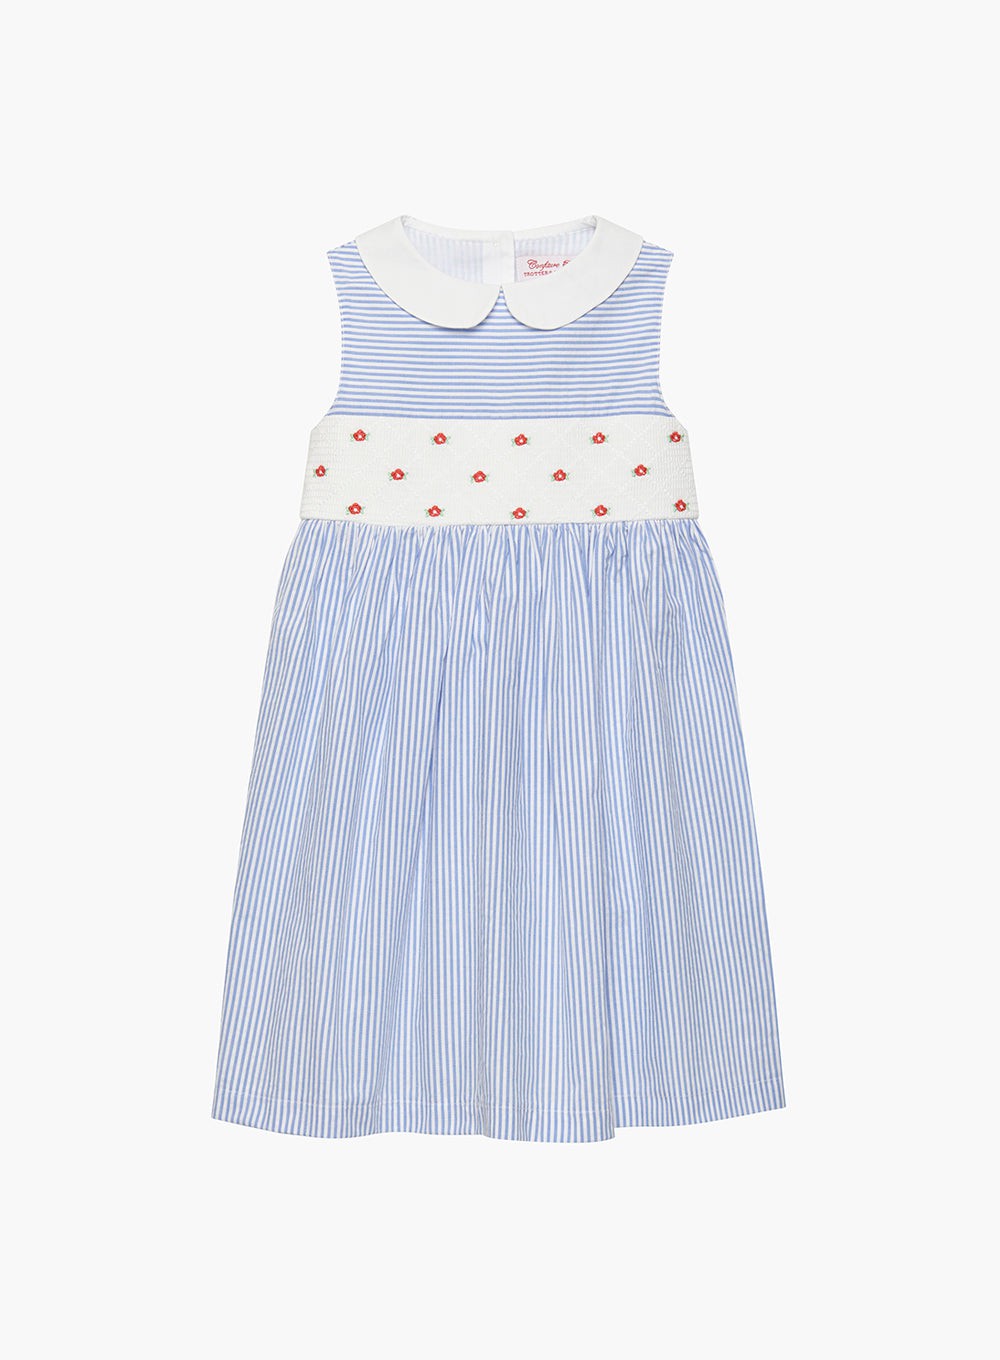 Girls Tilly Smocked Dress in Blue Stripe | Trotters London